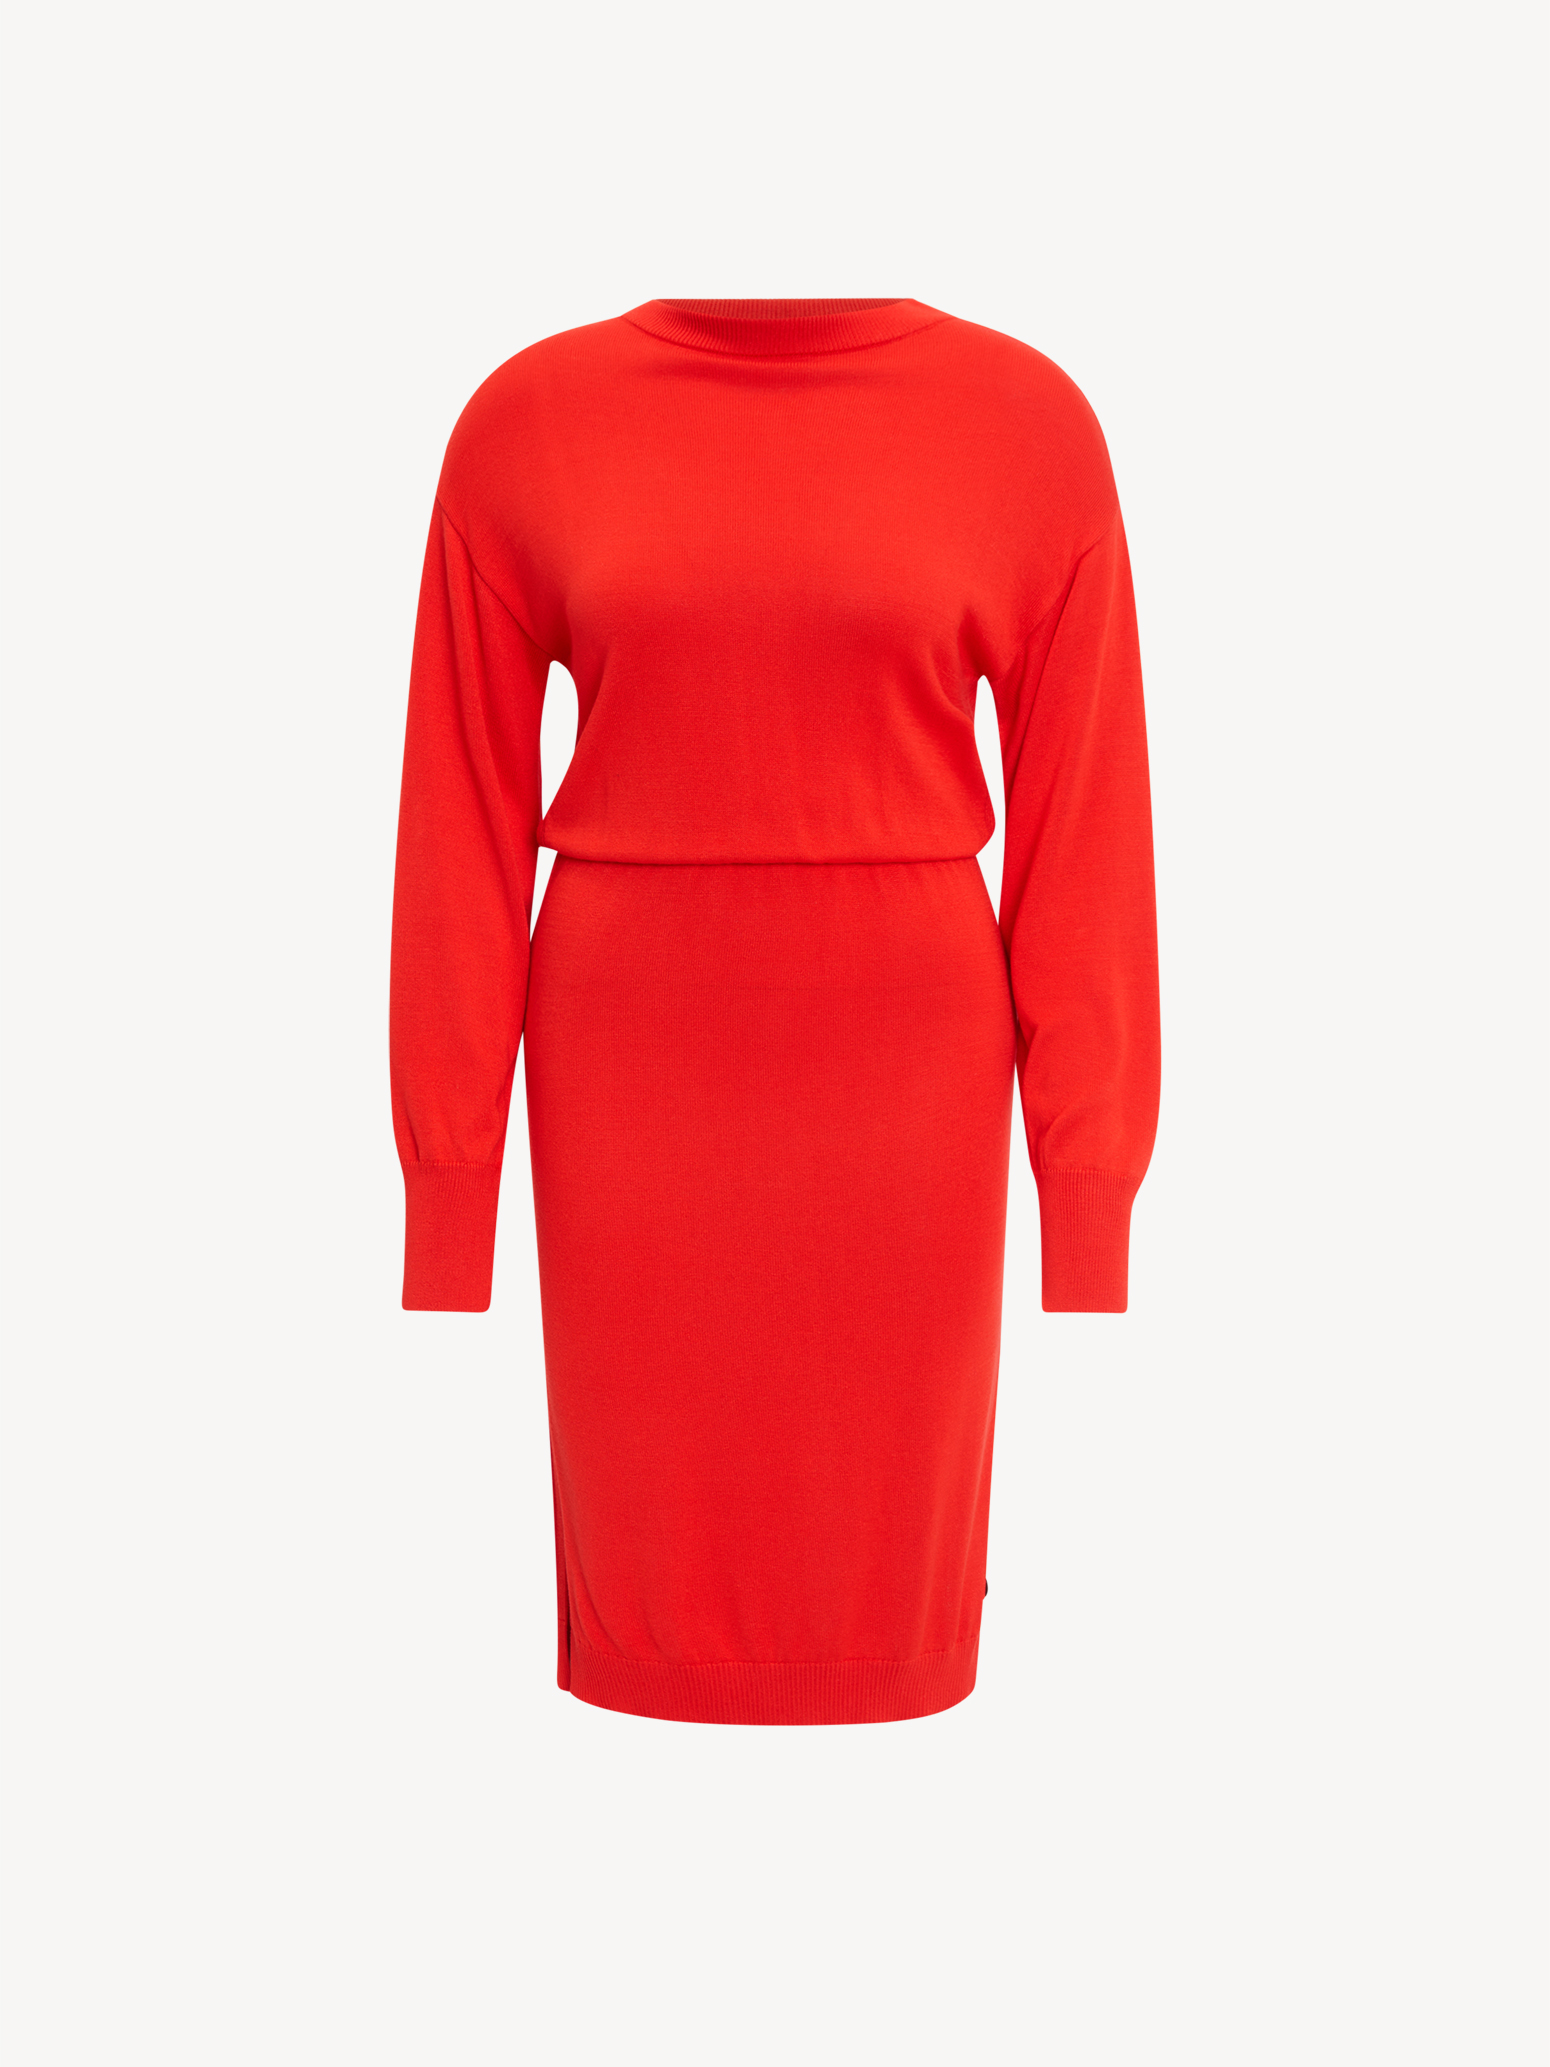 Kleid - rot TAW0329-30042: Tamaris & online Röcke kaufen! Kleider